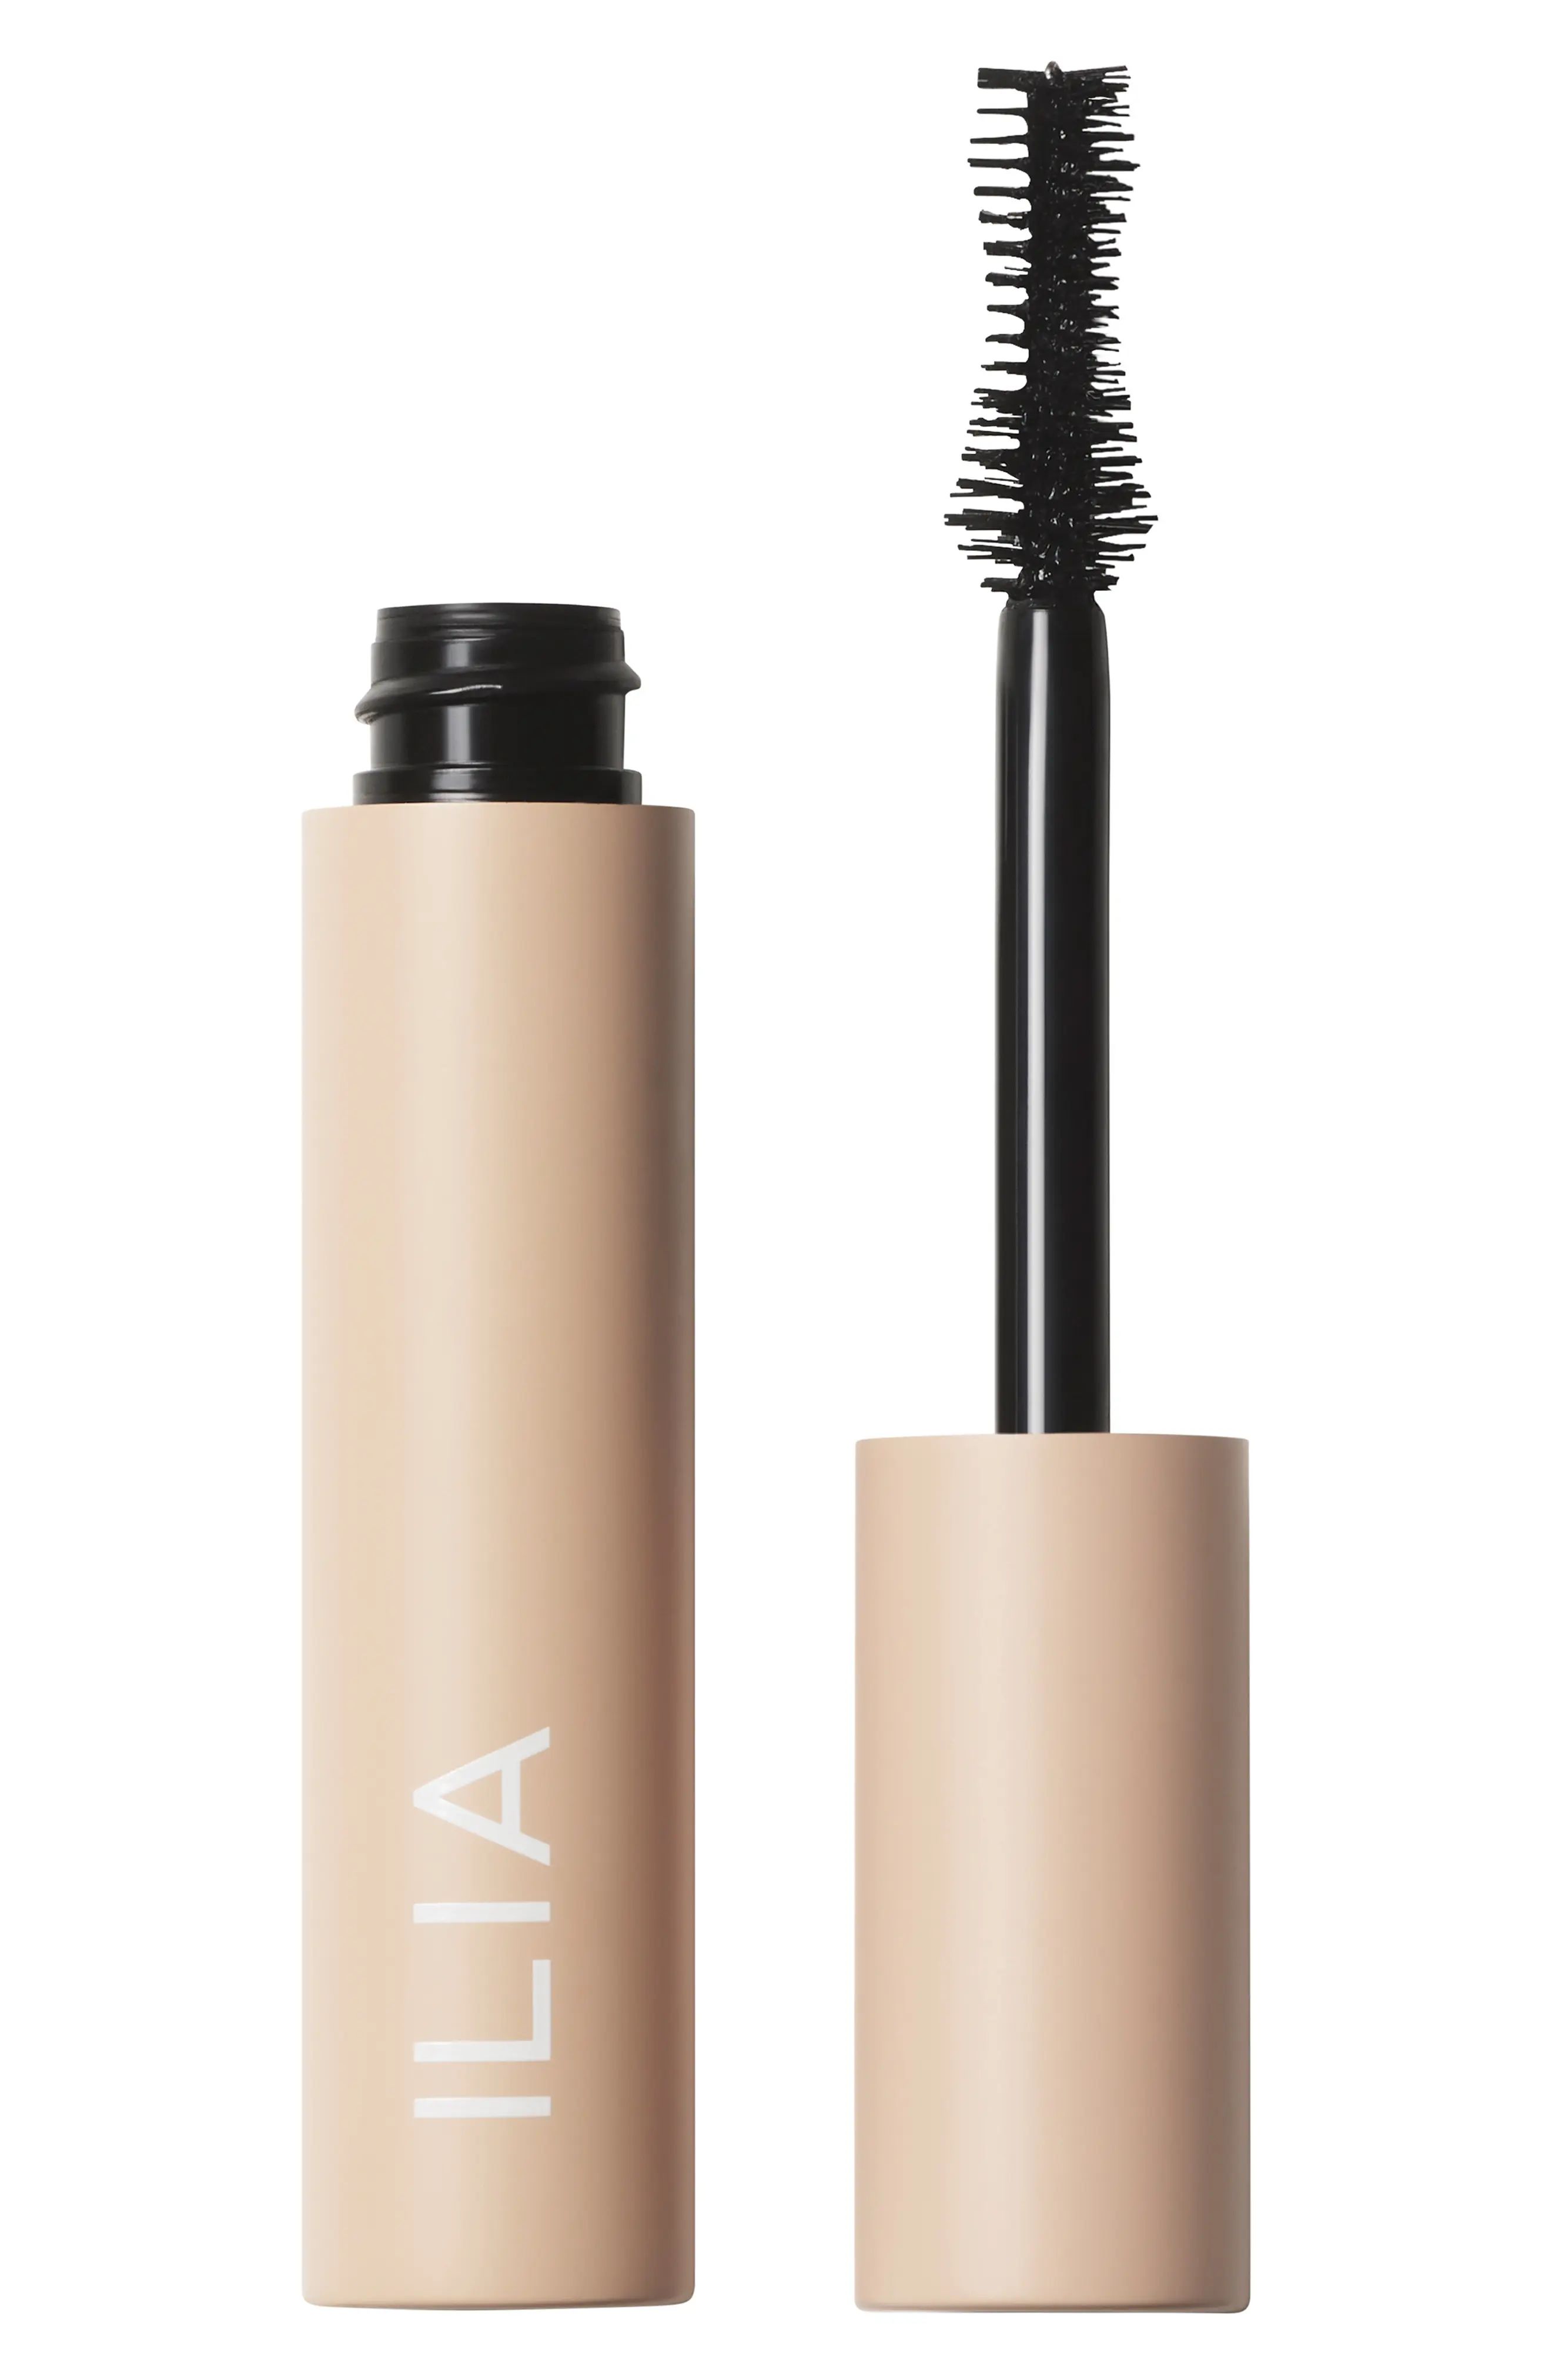 Ilia Fullest Volumizing Mascara, Size 0.13 oz - No Color | Nordstrom